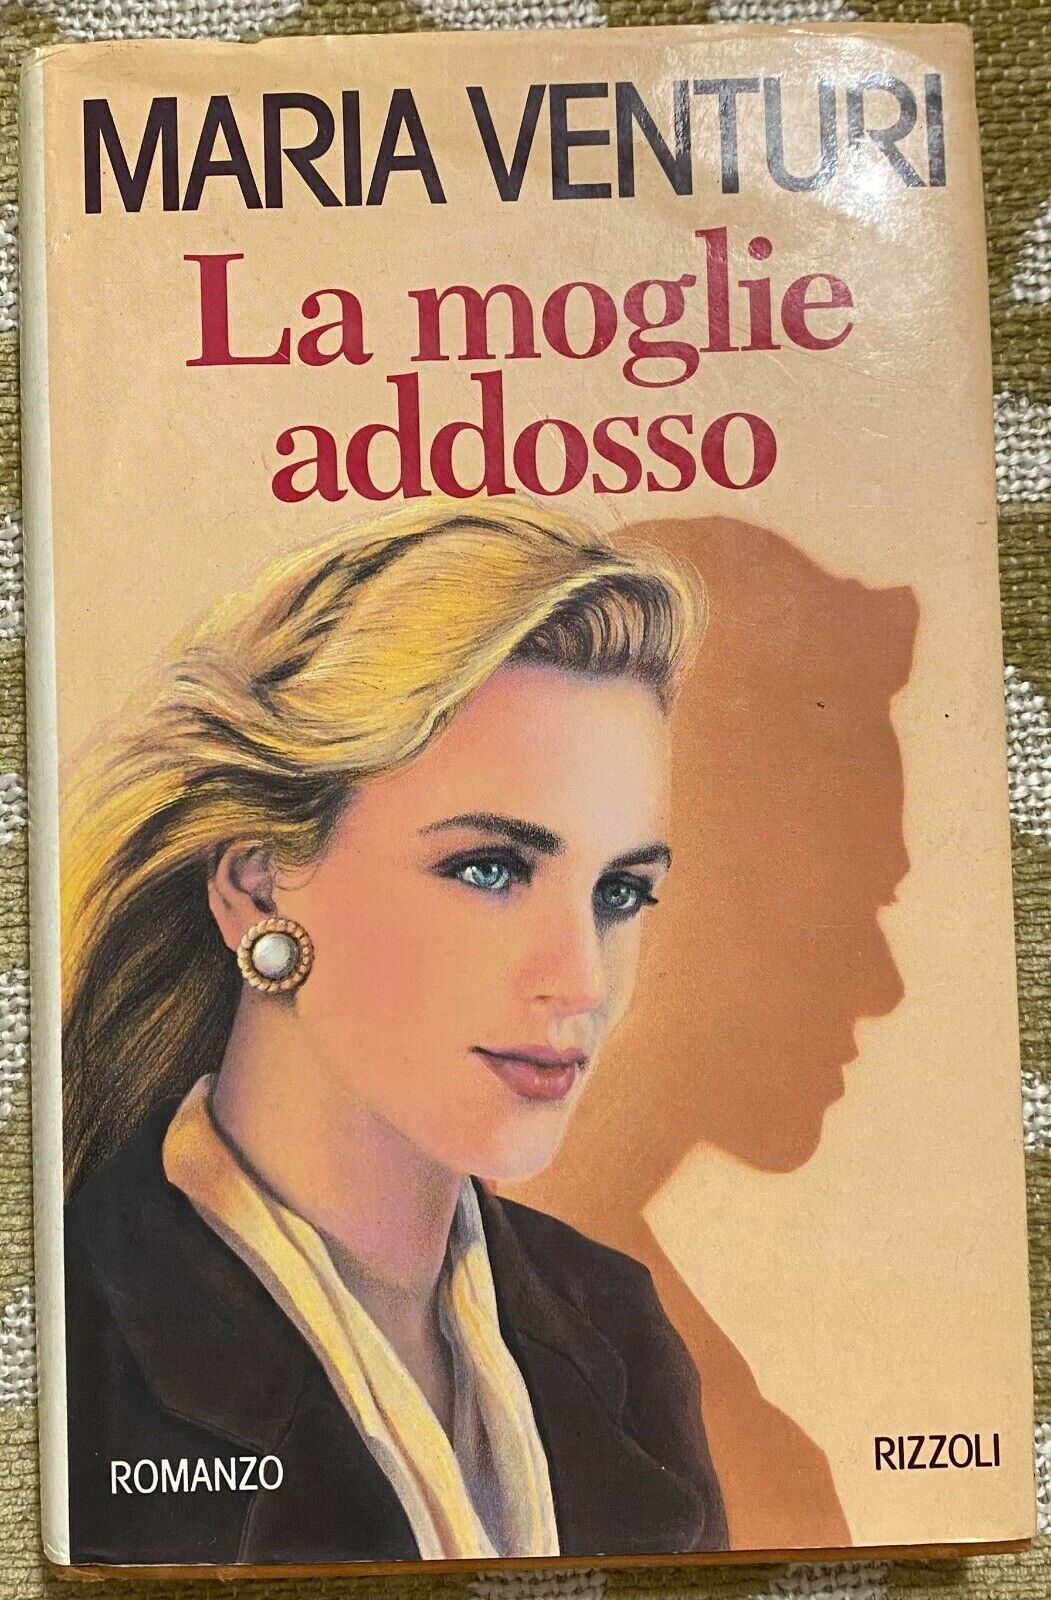 La moglie addosso - Maria Venturi - Rizzoli - 1993 - M